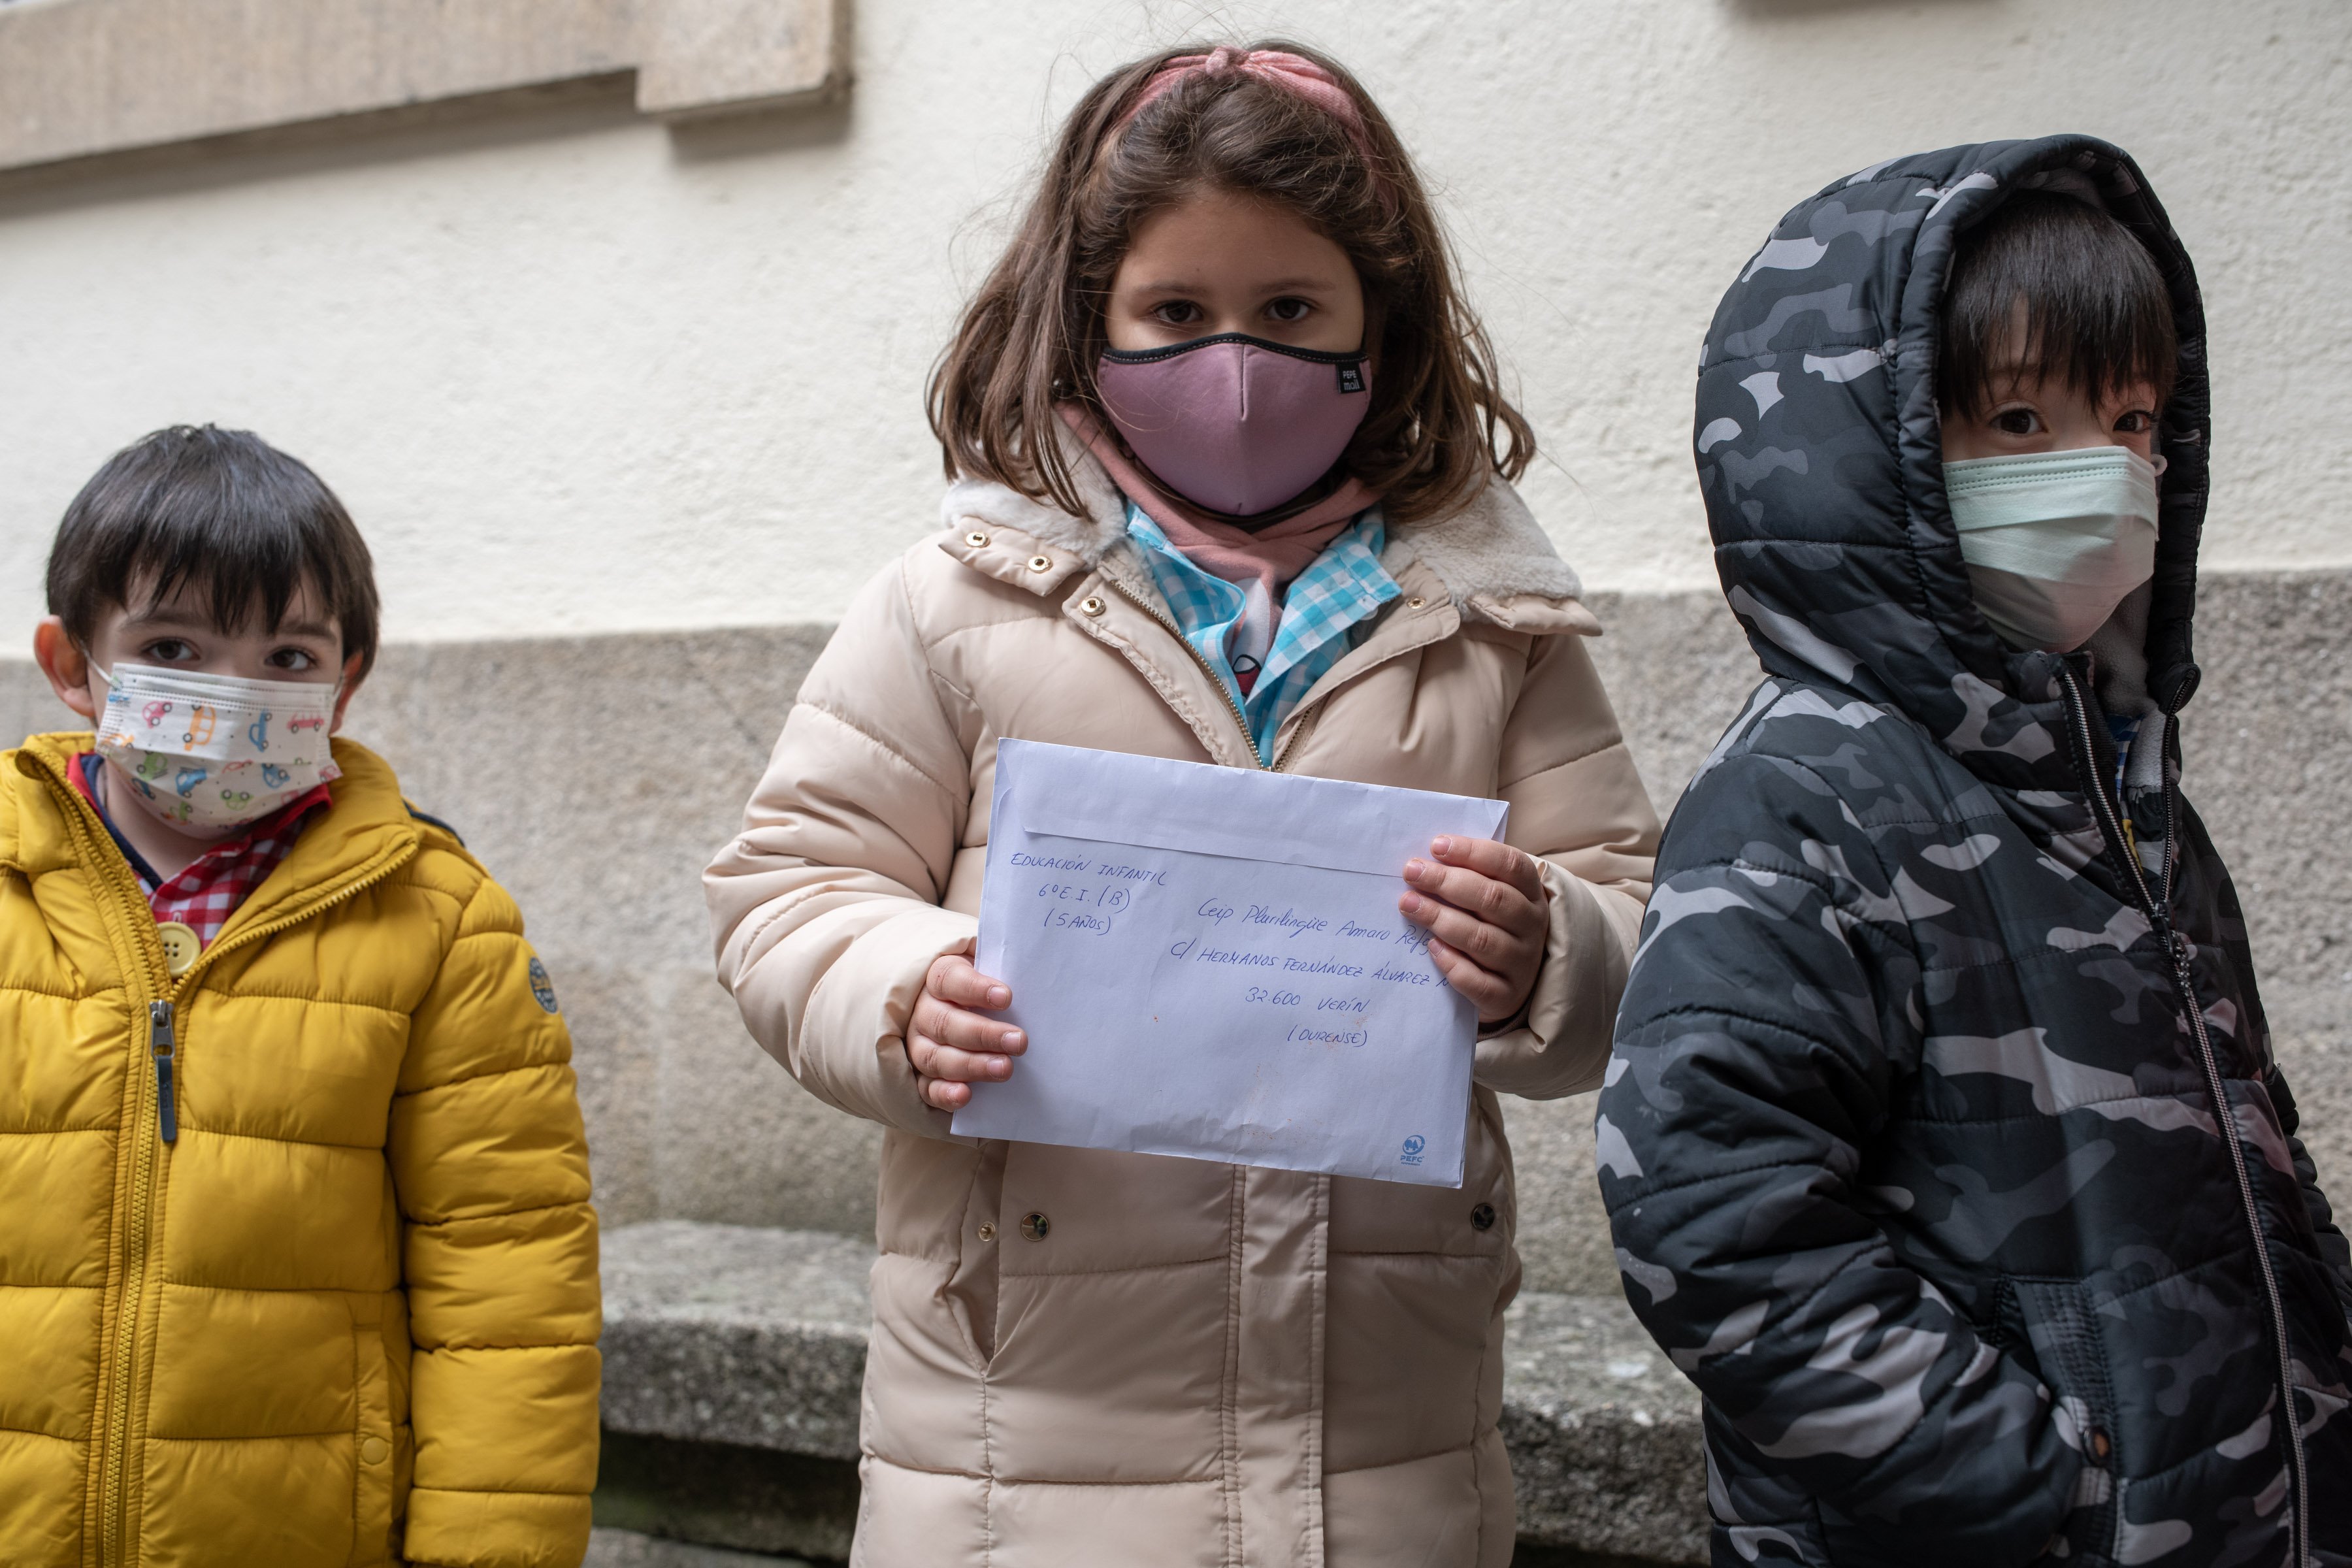 VERÍN (OFICINA CORREOS). 29/11/2021. OURENSE. Os cativos do CEIP Amaro Refojo de Verín envían cartas solidarias a La Palma. FOTO: ÓSCAR PINAL
